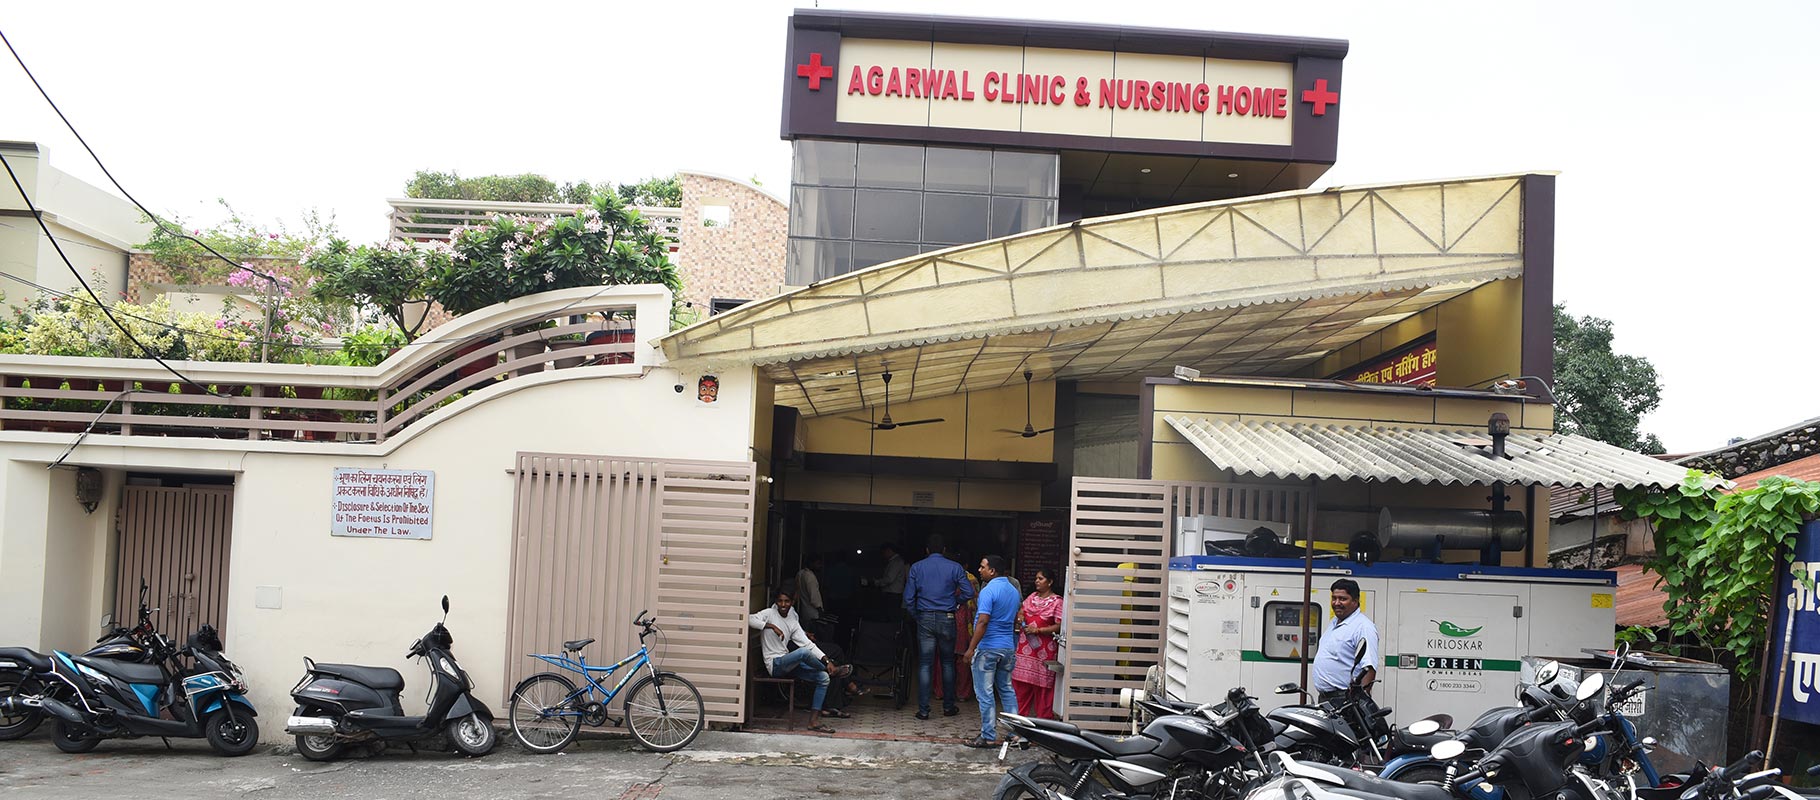 Agarawal Clinic & Nursing Home